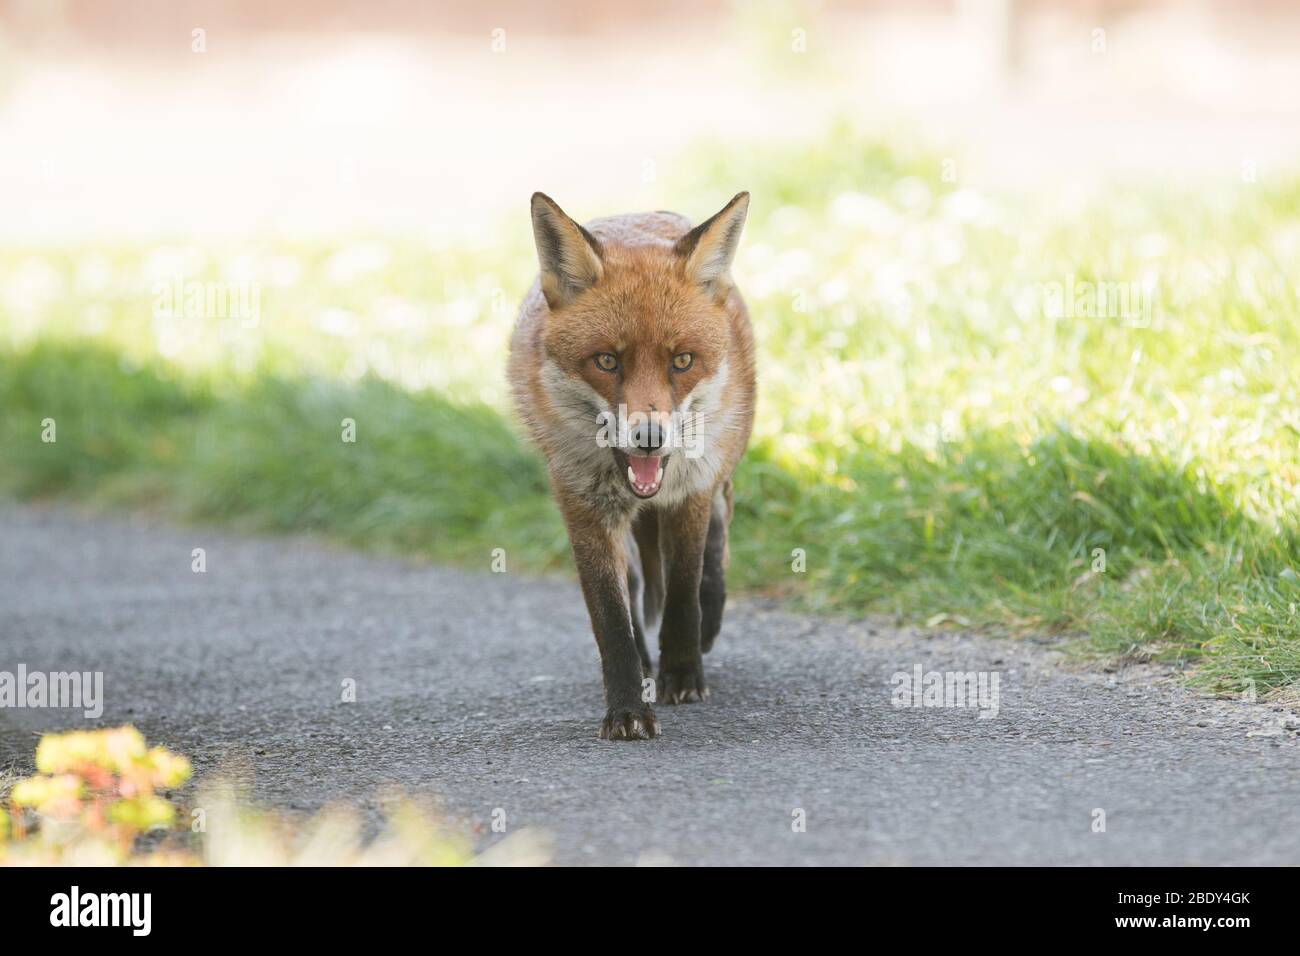 Ein Fuchs patrouilliert durch die Straßen von Brentwood, Essex, Großbritannien. Füchse sind heute in städtischen Gebieten im Vereinigten Königreich verbreitet. Stockfoto